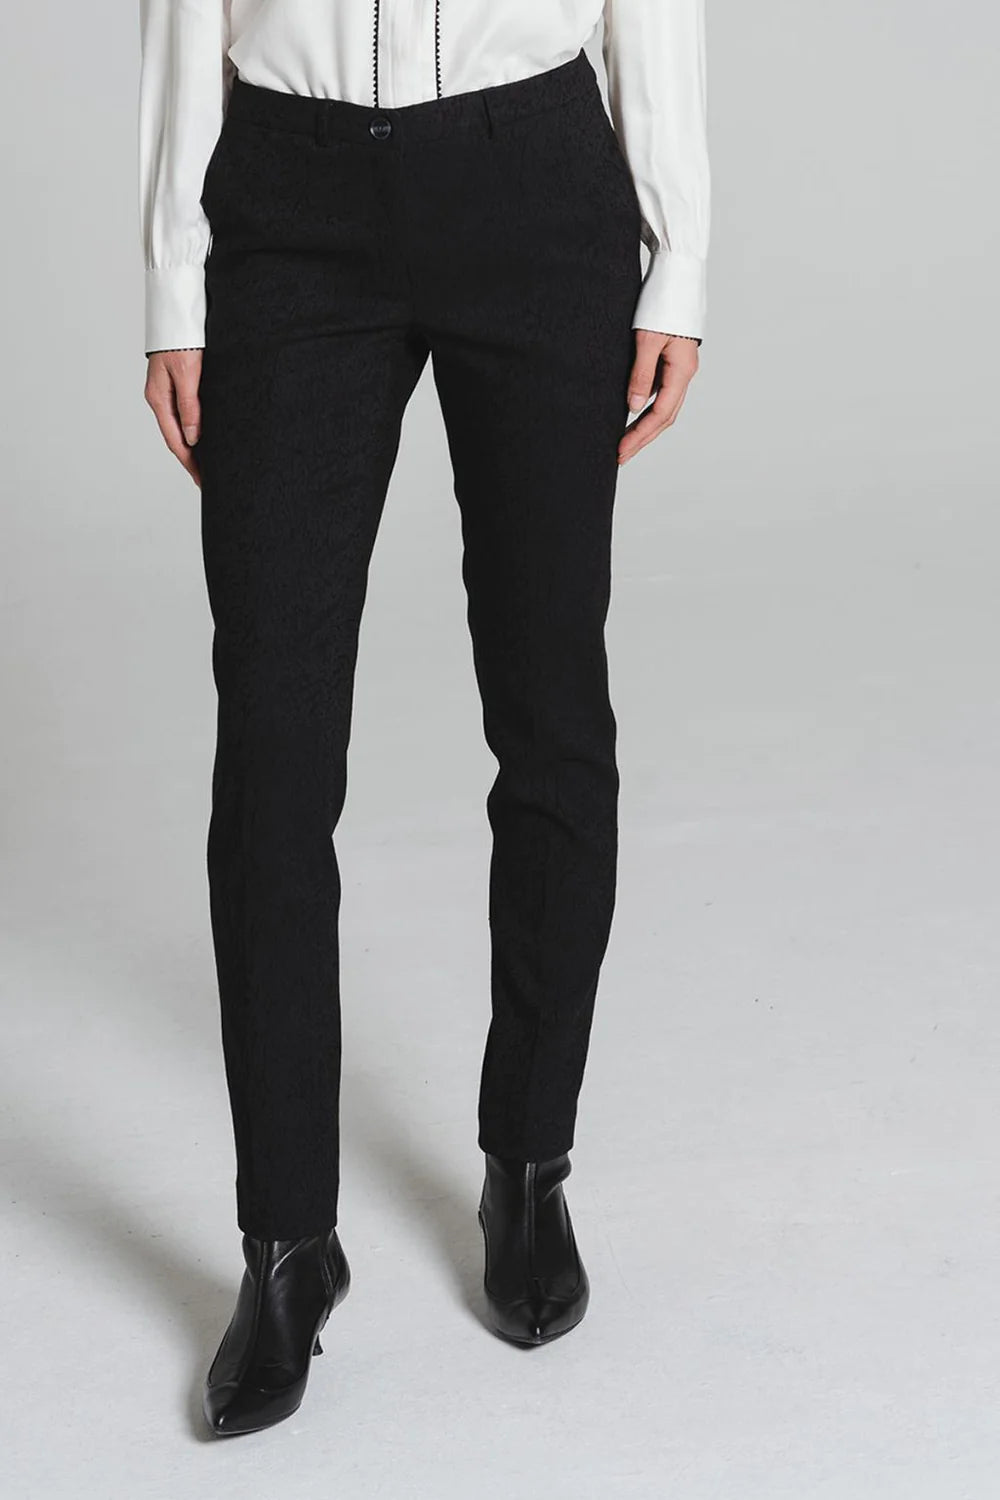 Arnedo Trouser in Black